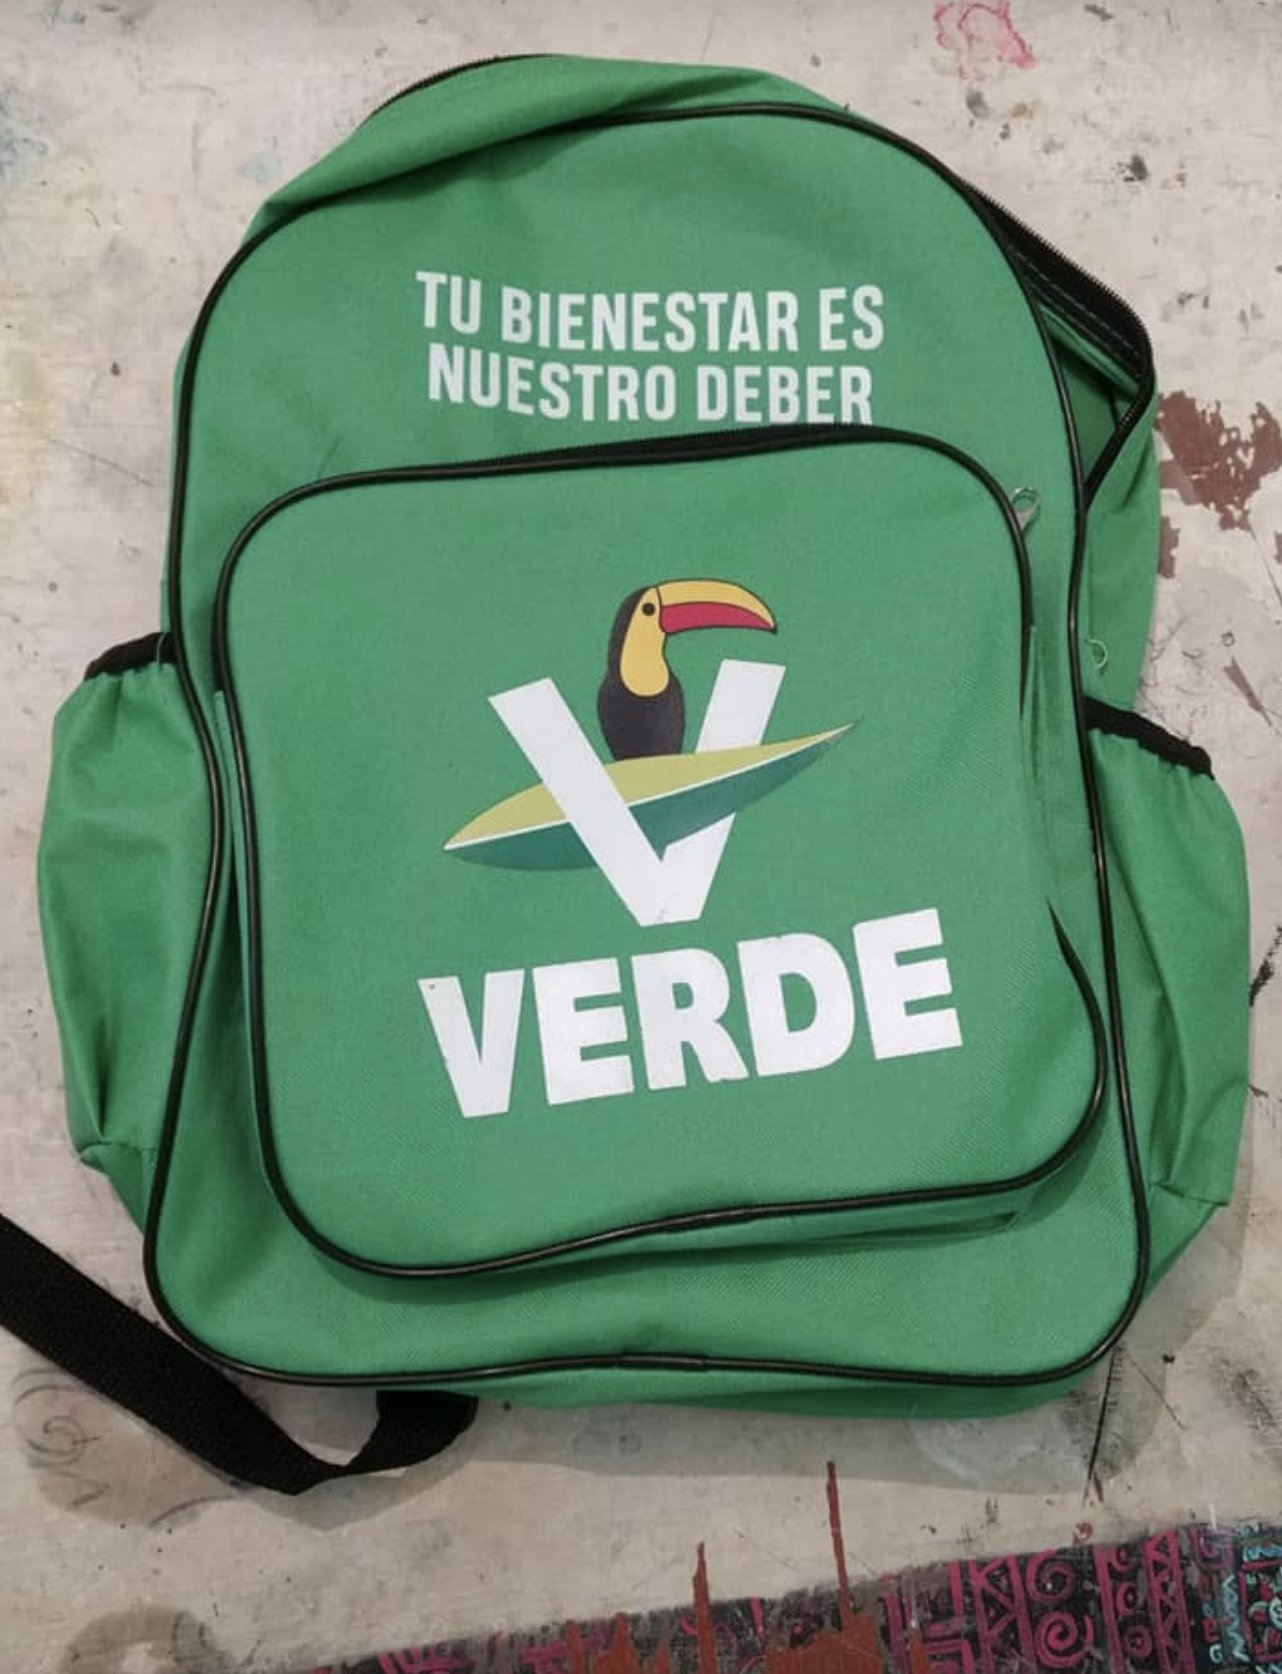 IZQmx on Twitter: "¿Los Partido Verde te dieron una mochila? da vergüenza utilizarla? Aquí un ejemplo reciclar los productos regalan (con nuestros impuestos) los partidos políticos. Diseño: Ulises